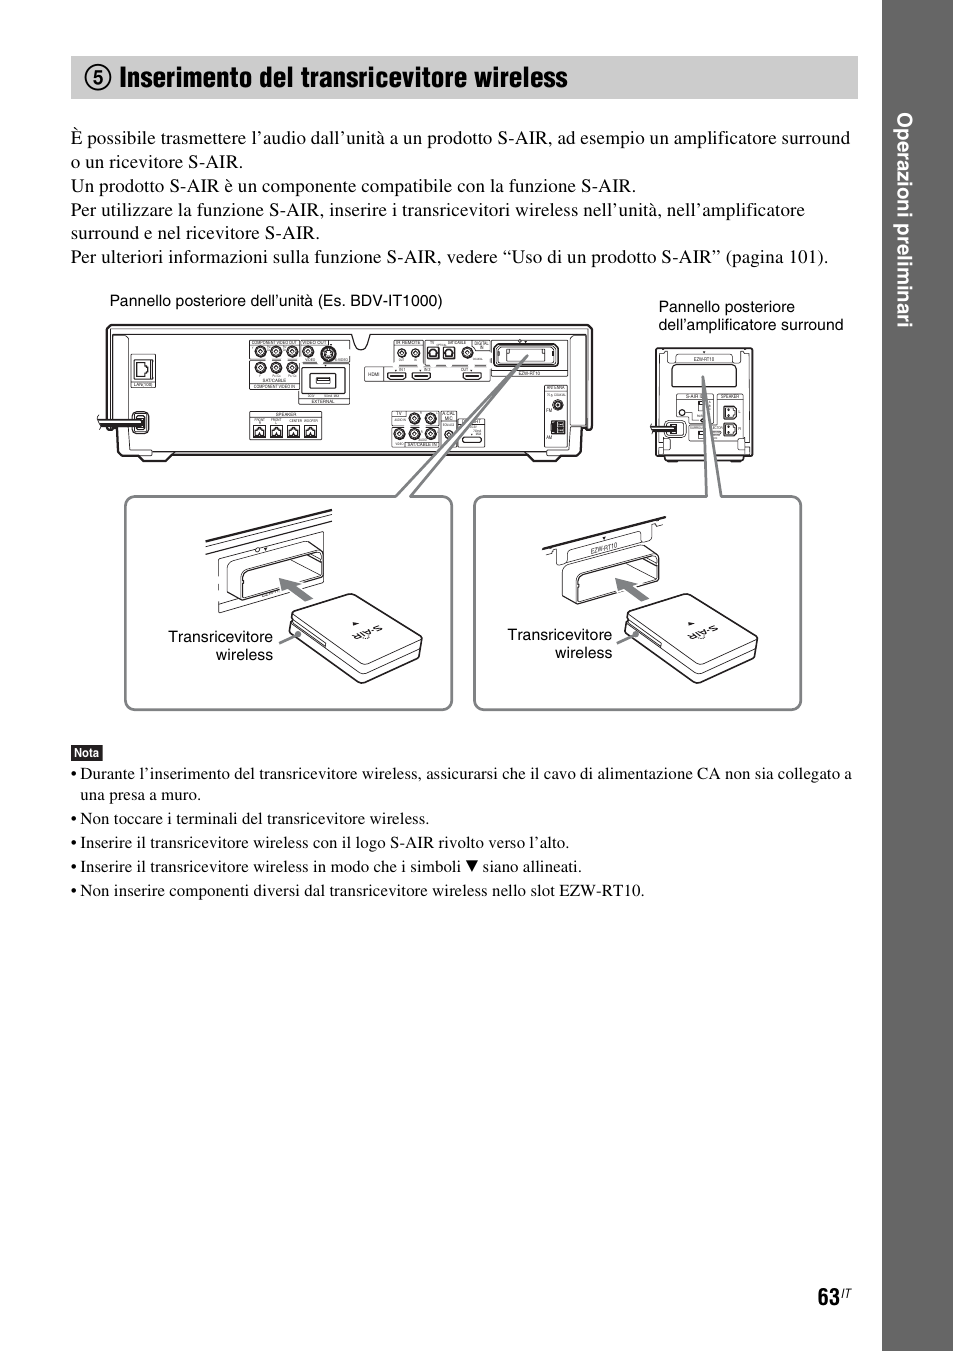 5 inserimento del transricevitore wireless, 5inserimento del transricevitore wireless, Op e raz ioni prelim ina ri | Nota | Sony BDV-IS1000 Manuale d'uso | Pagina 223 / 319